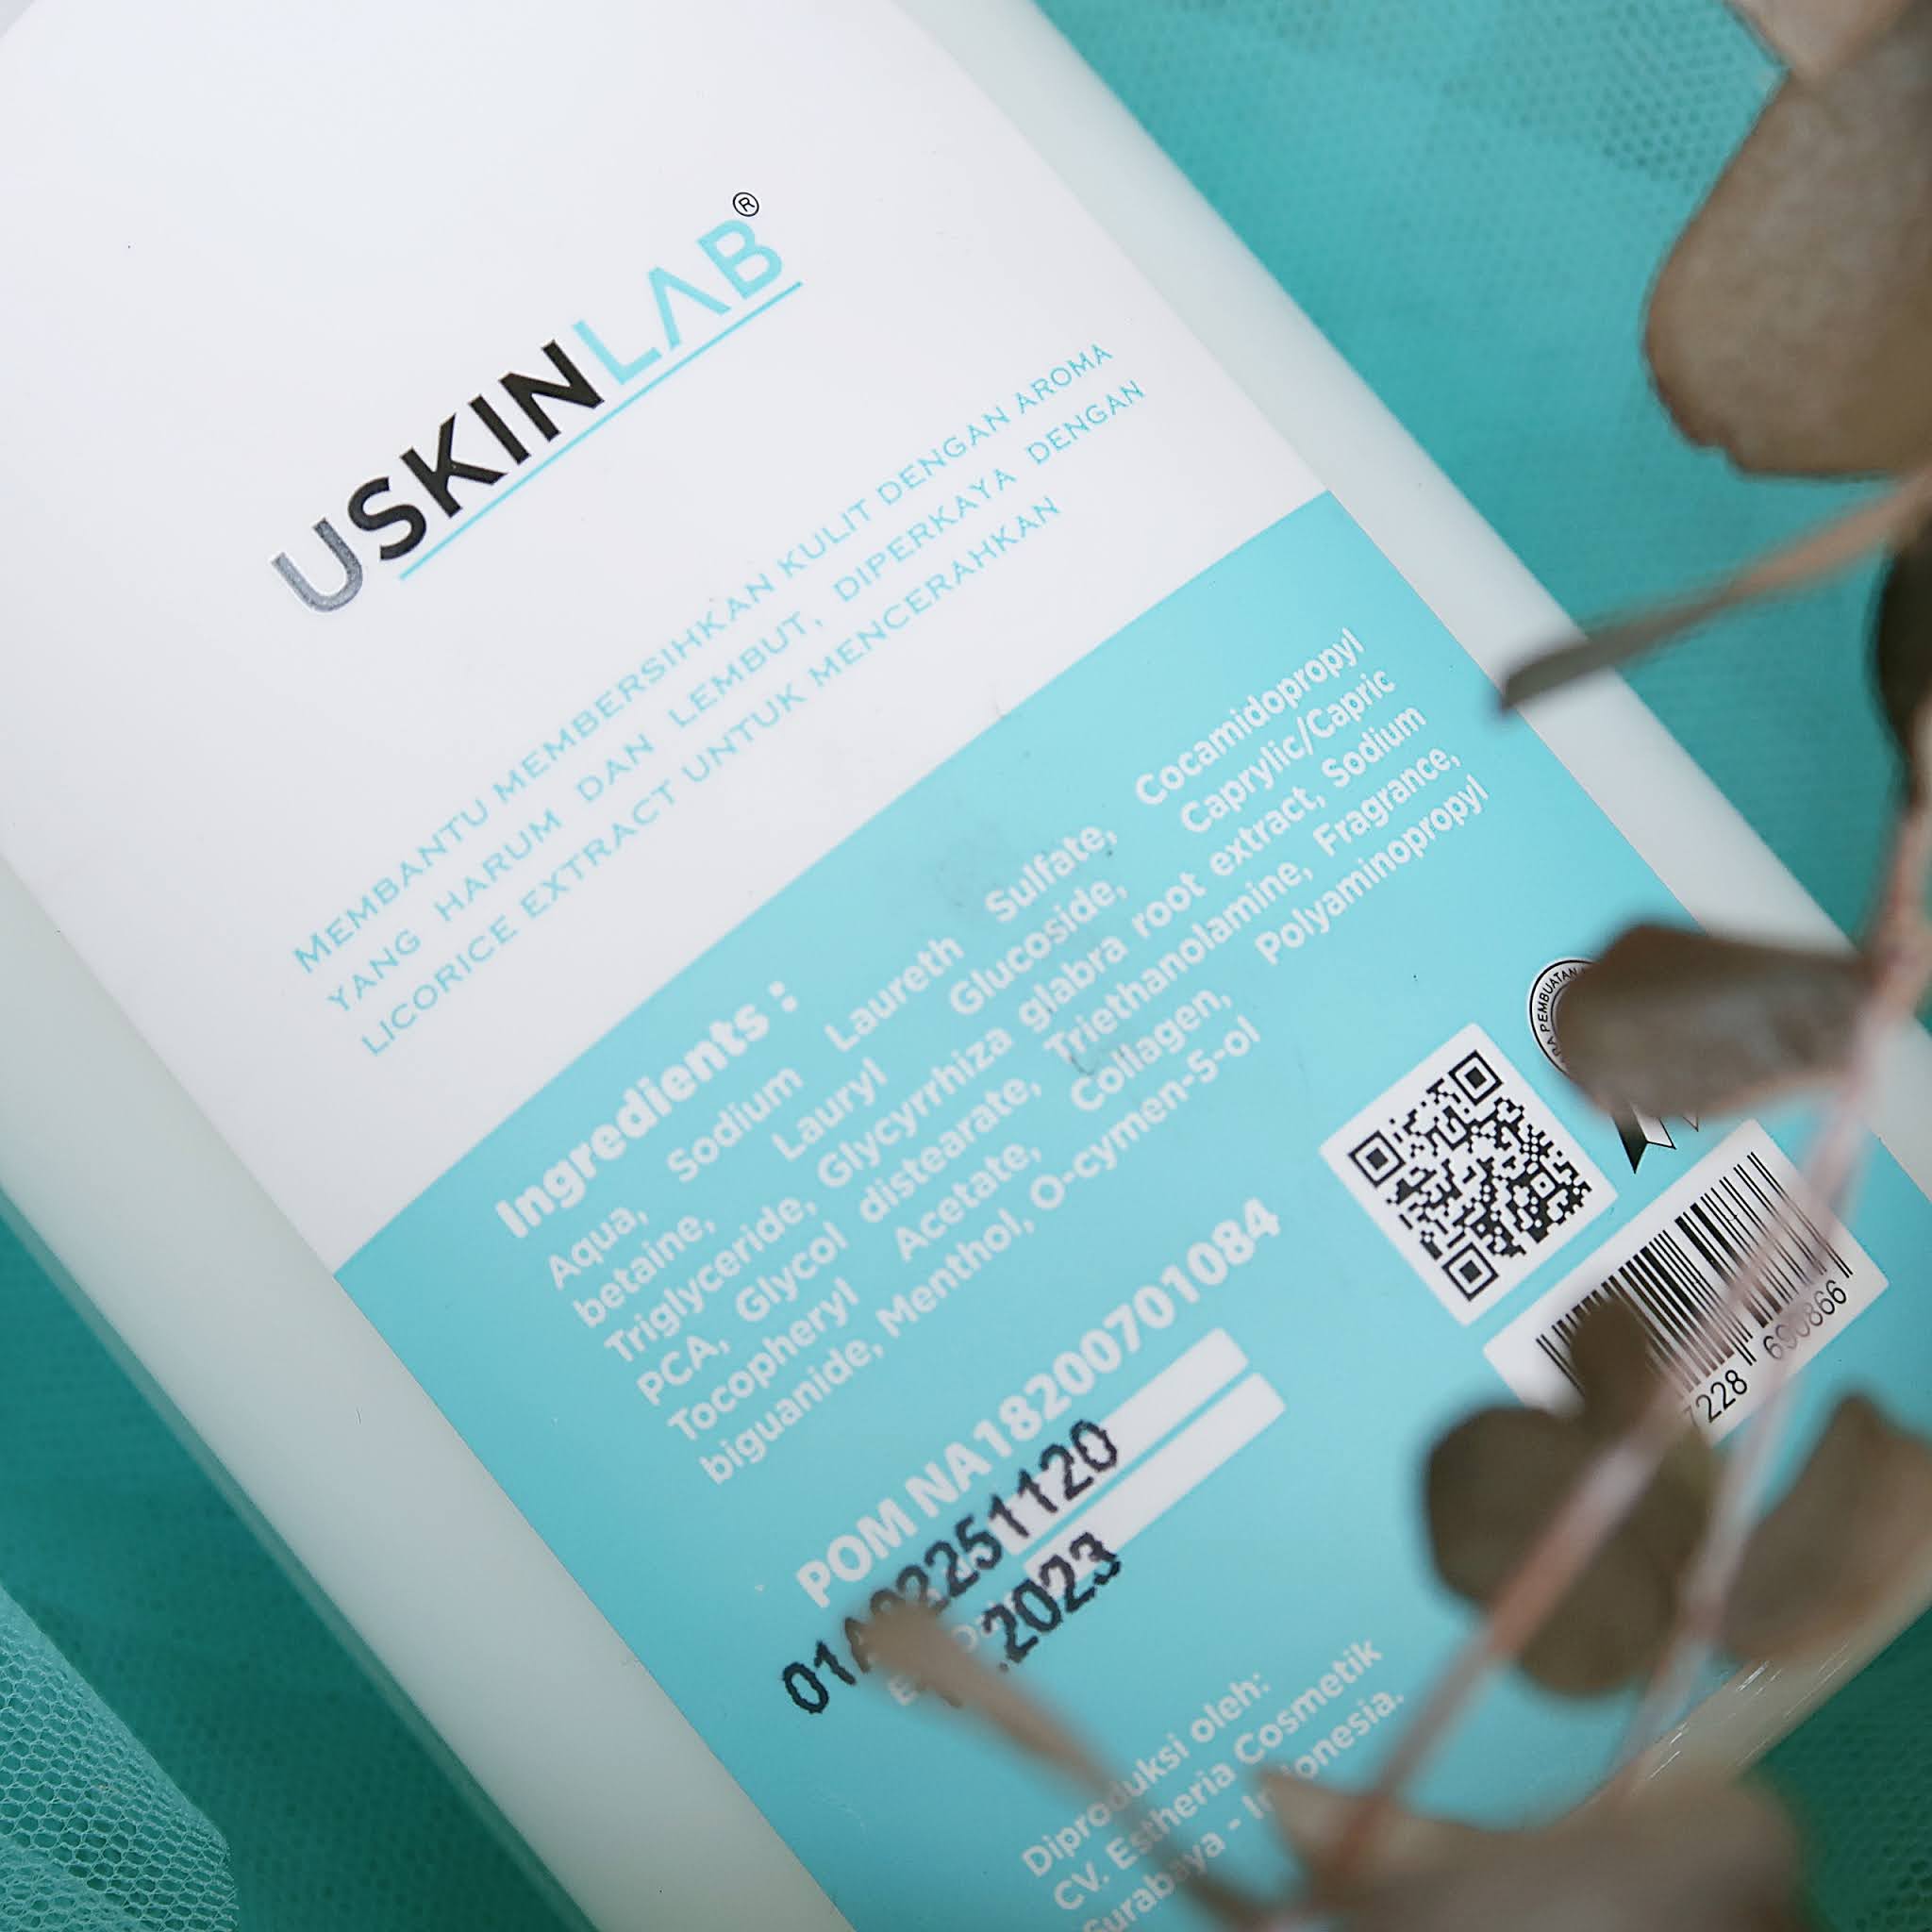 Ingredients USKINLAB Body Soap Moisture Brightening Collagen